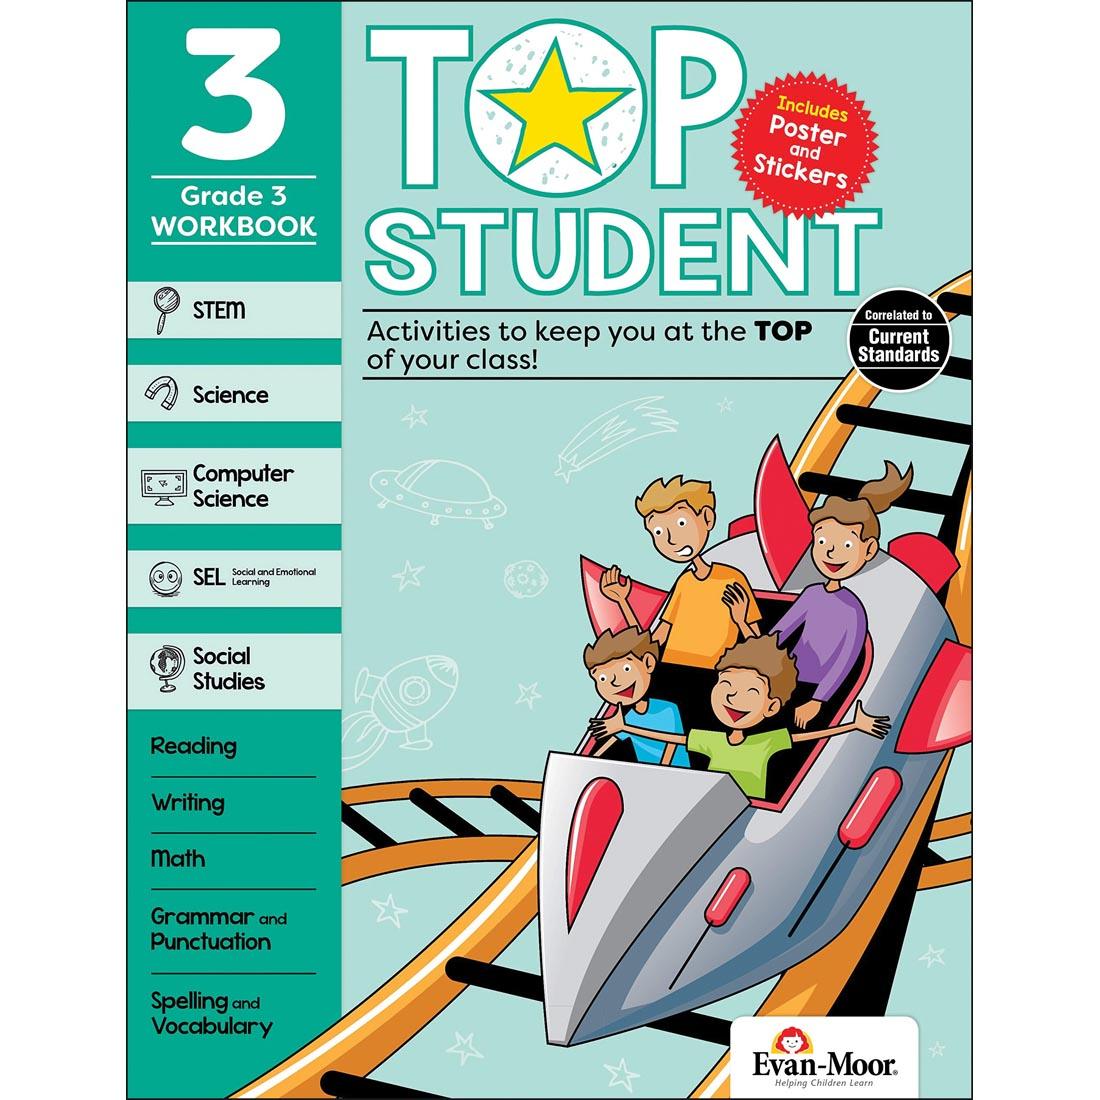 Top Student Grade 3 Workbook by Evan-Moor